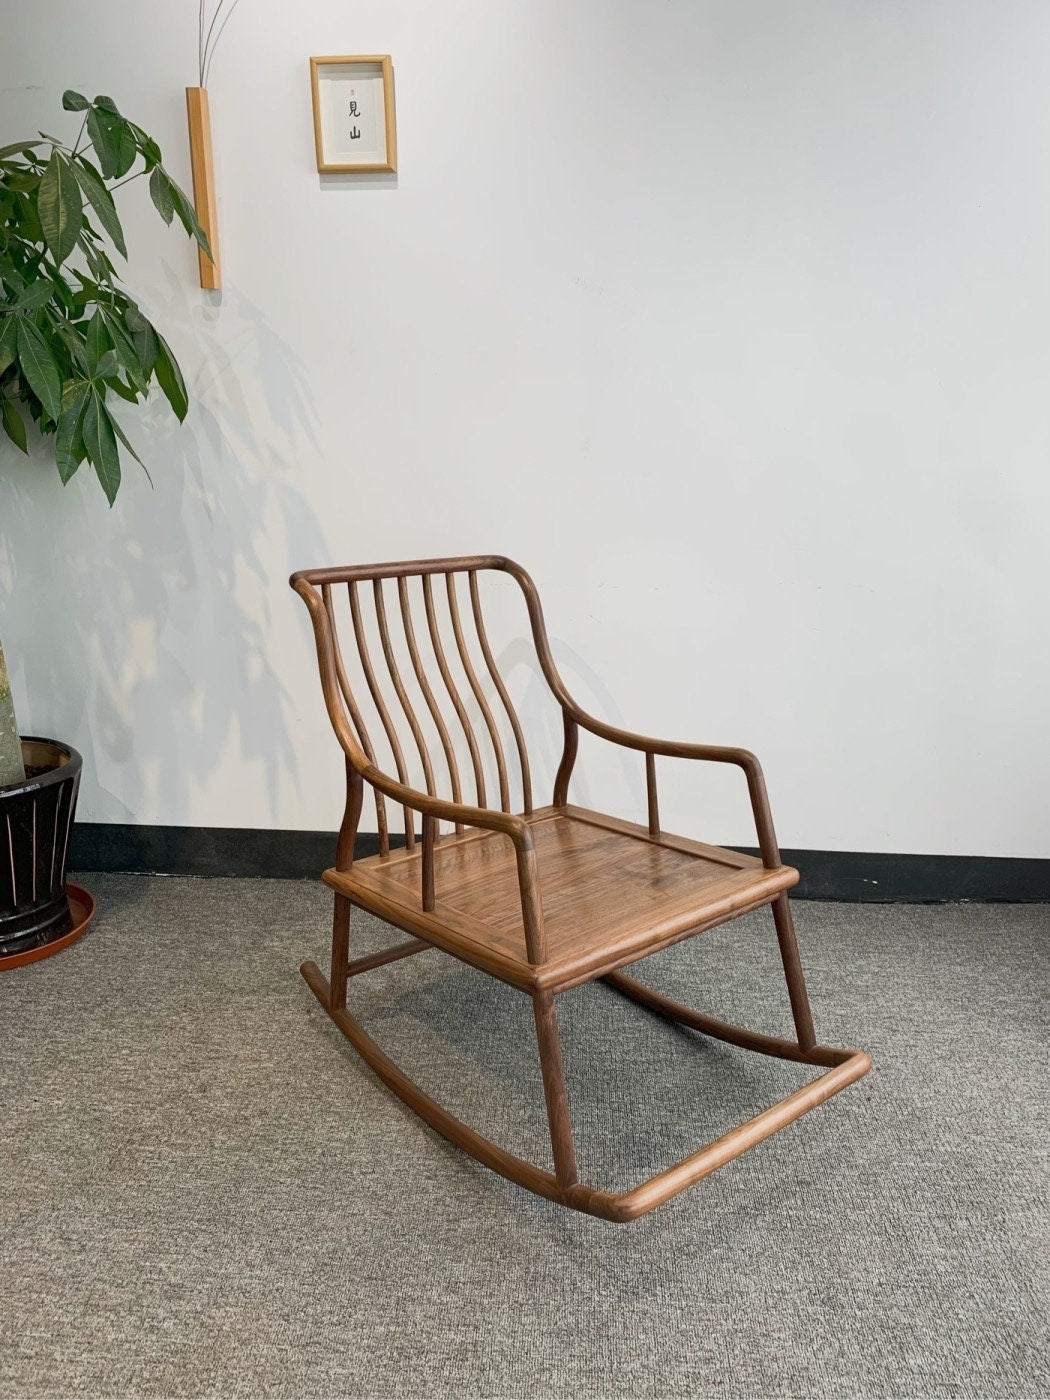 كرسي هزاز من خشب الجوز الأسود الصلب، كرسي من خشب الجوز الأسود الحديث في منتصف القرن، كرسي طعام